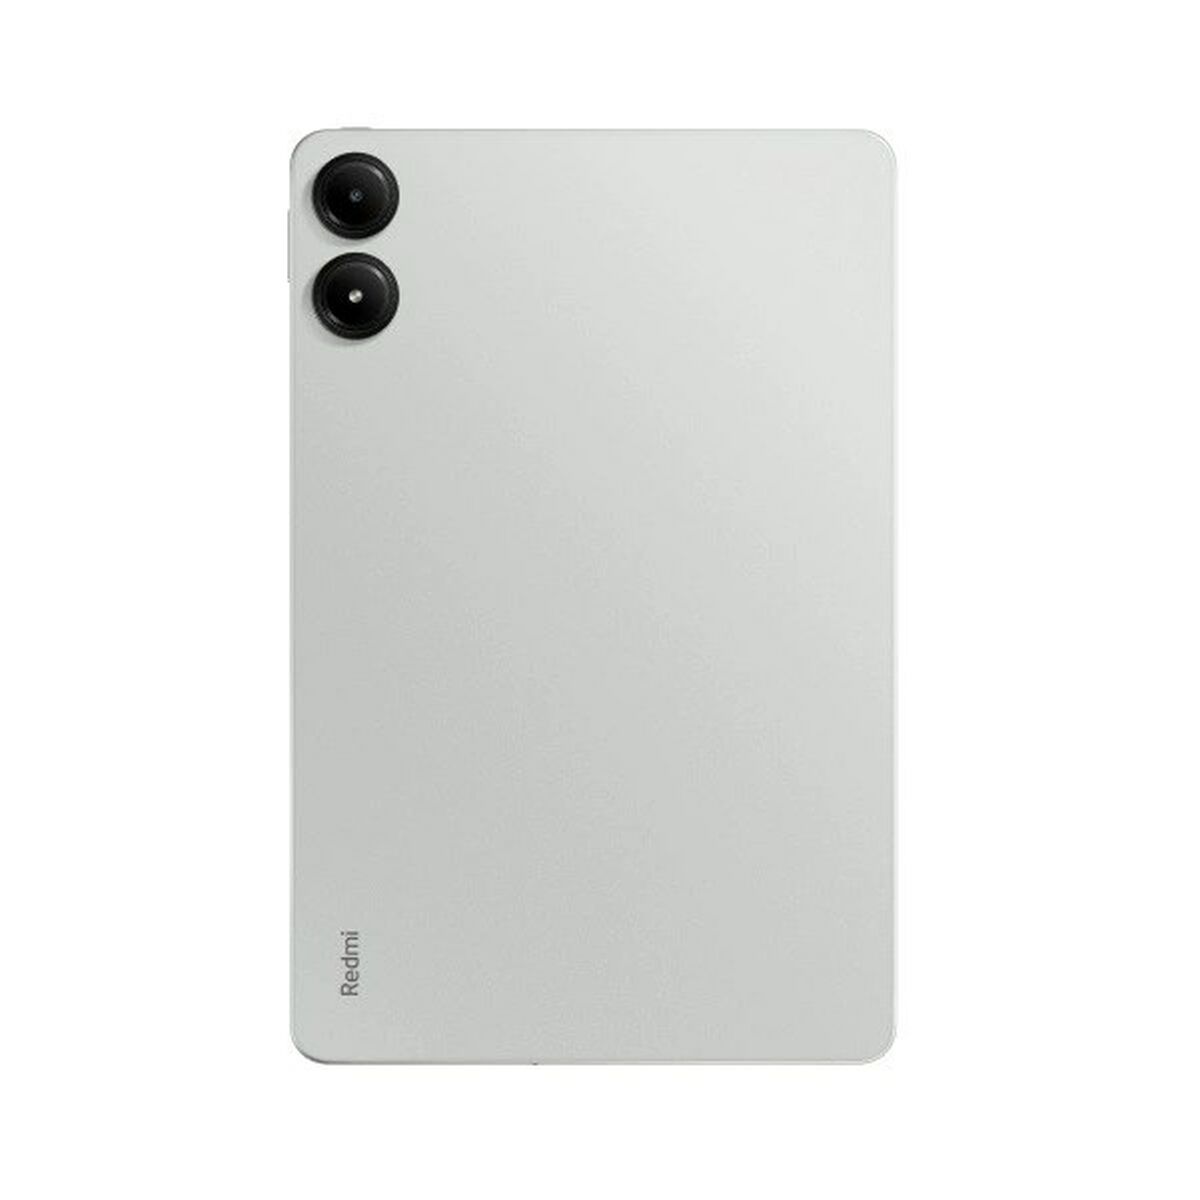 Tablet Xiaomi REDMI PAD PRO 12,1" Qualcomm Snapdragon 7s gen 2 8 GB RAM 256 GB mint green - CA International  